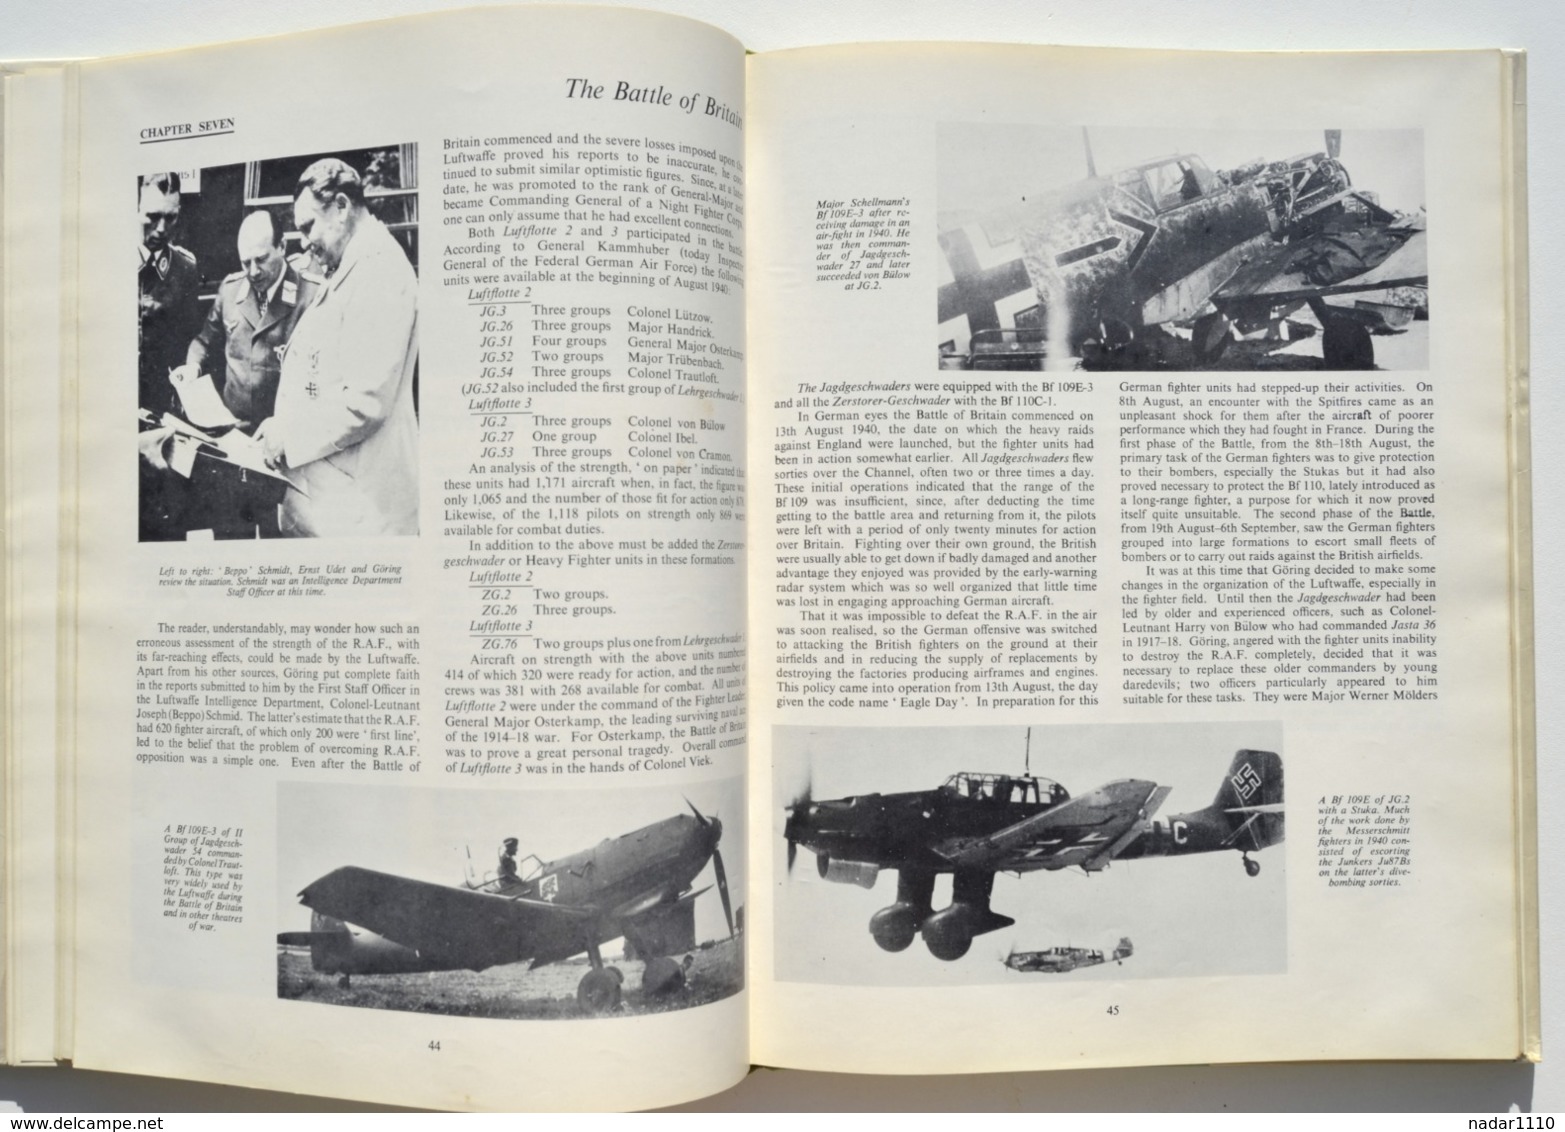 Guerre 40-45, Aviation : The Messerschmitt 109, A Famous German Fighter - Heinz J. Nowarra, 1963 / Avion, Nazi - 1939-45